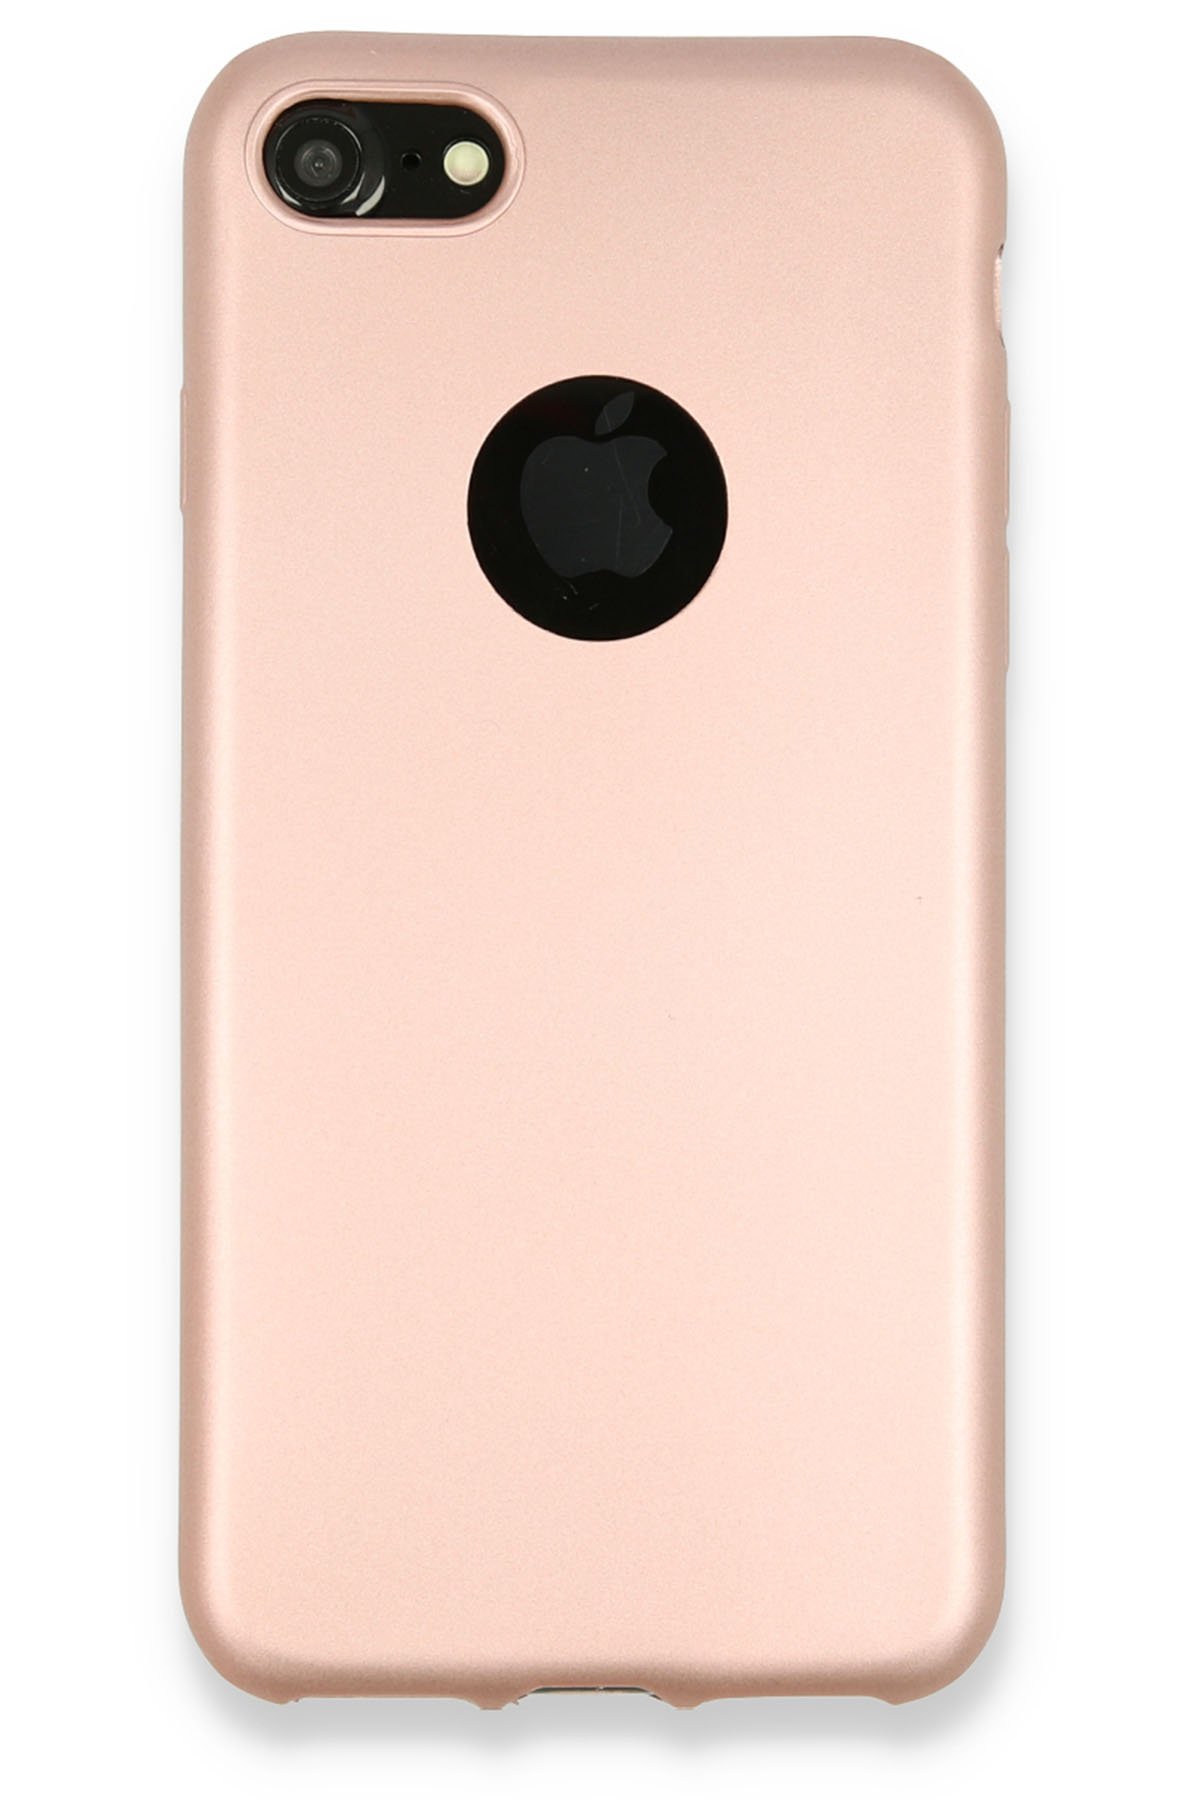 NewFace Newface iPhone 7 Kılıf Premium Rubber Silikon - Rose Gold